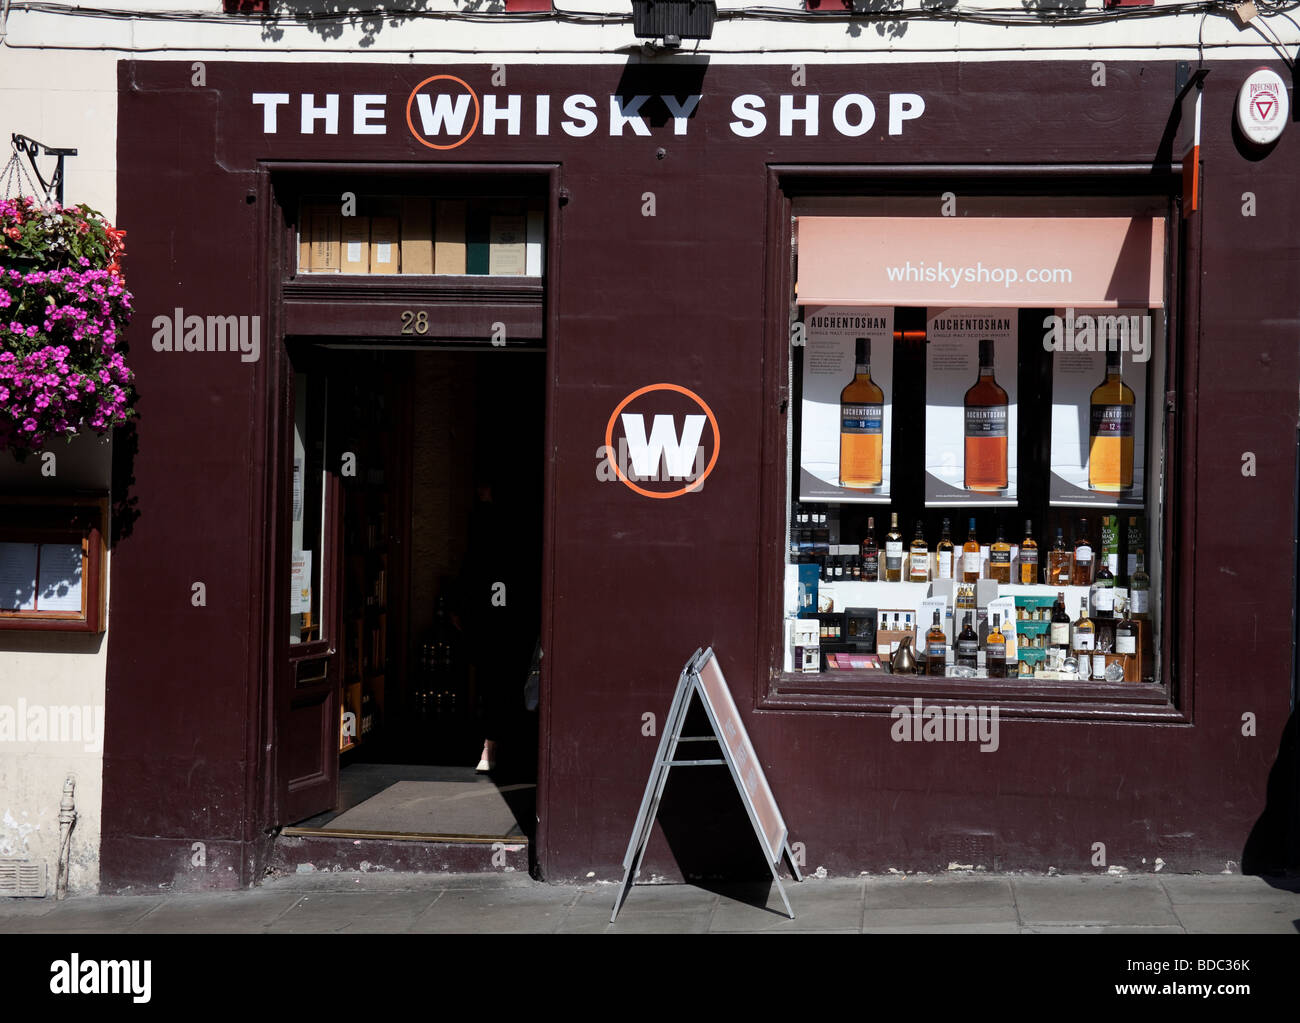 The Whisky Shop, Edinburgh, Scotland,UK, Europe Stock Photo